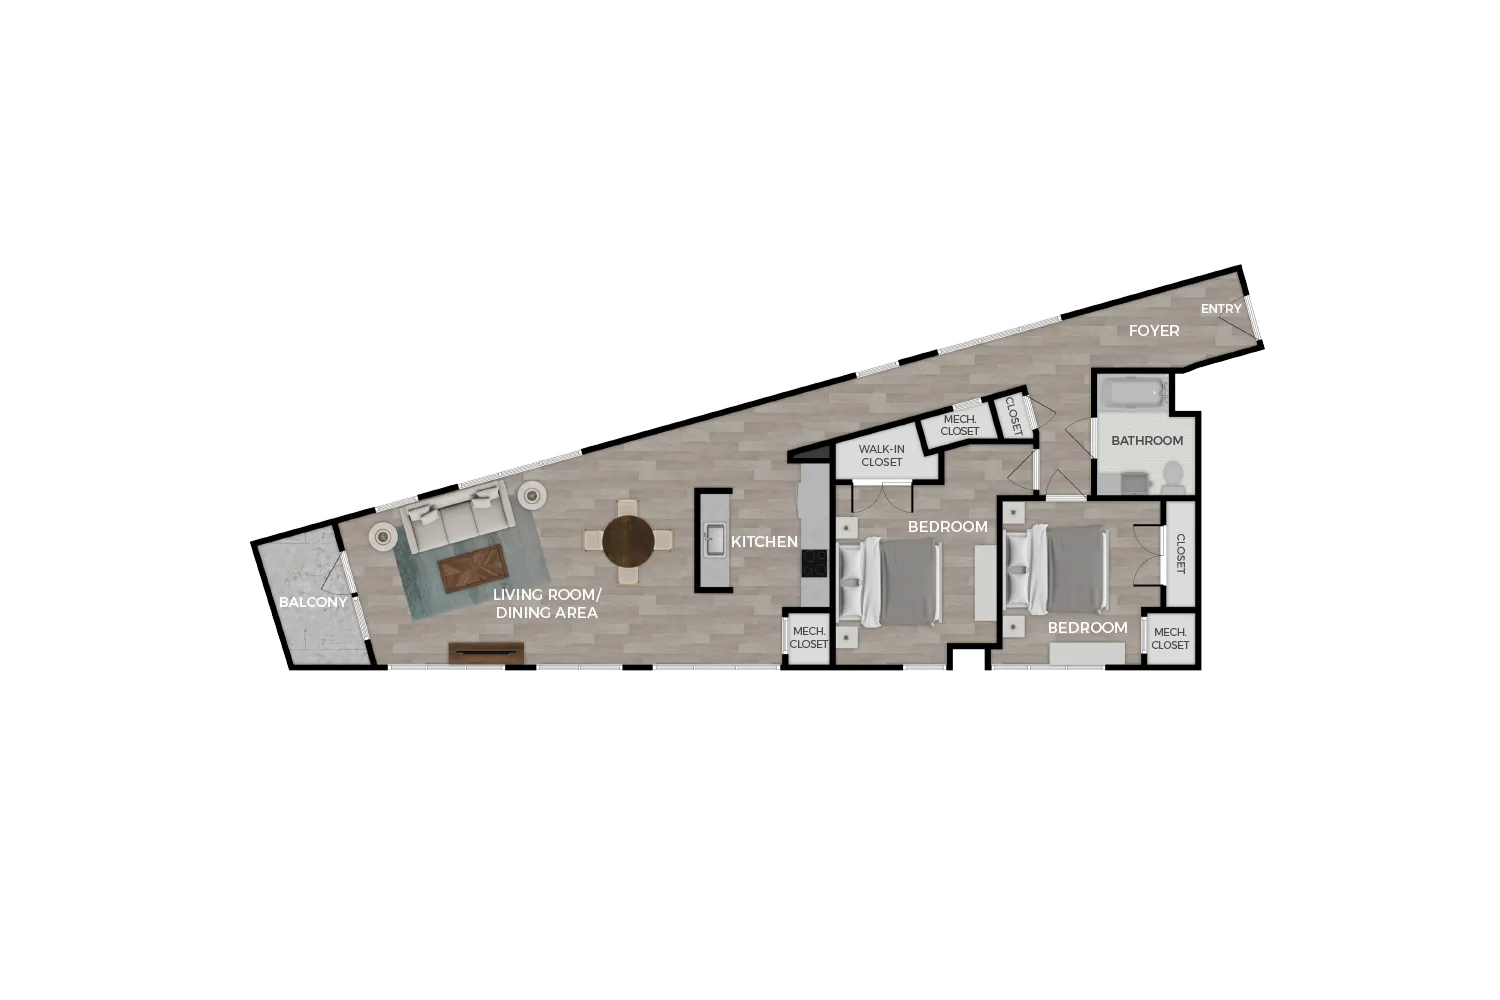 Floor plan rendering of "The Capitol" 2-bedroom unit